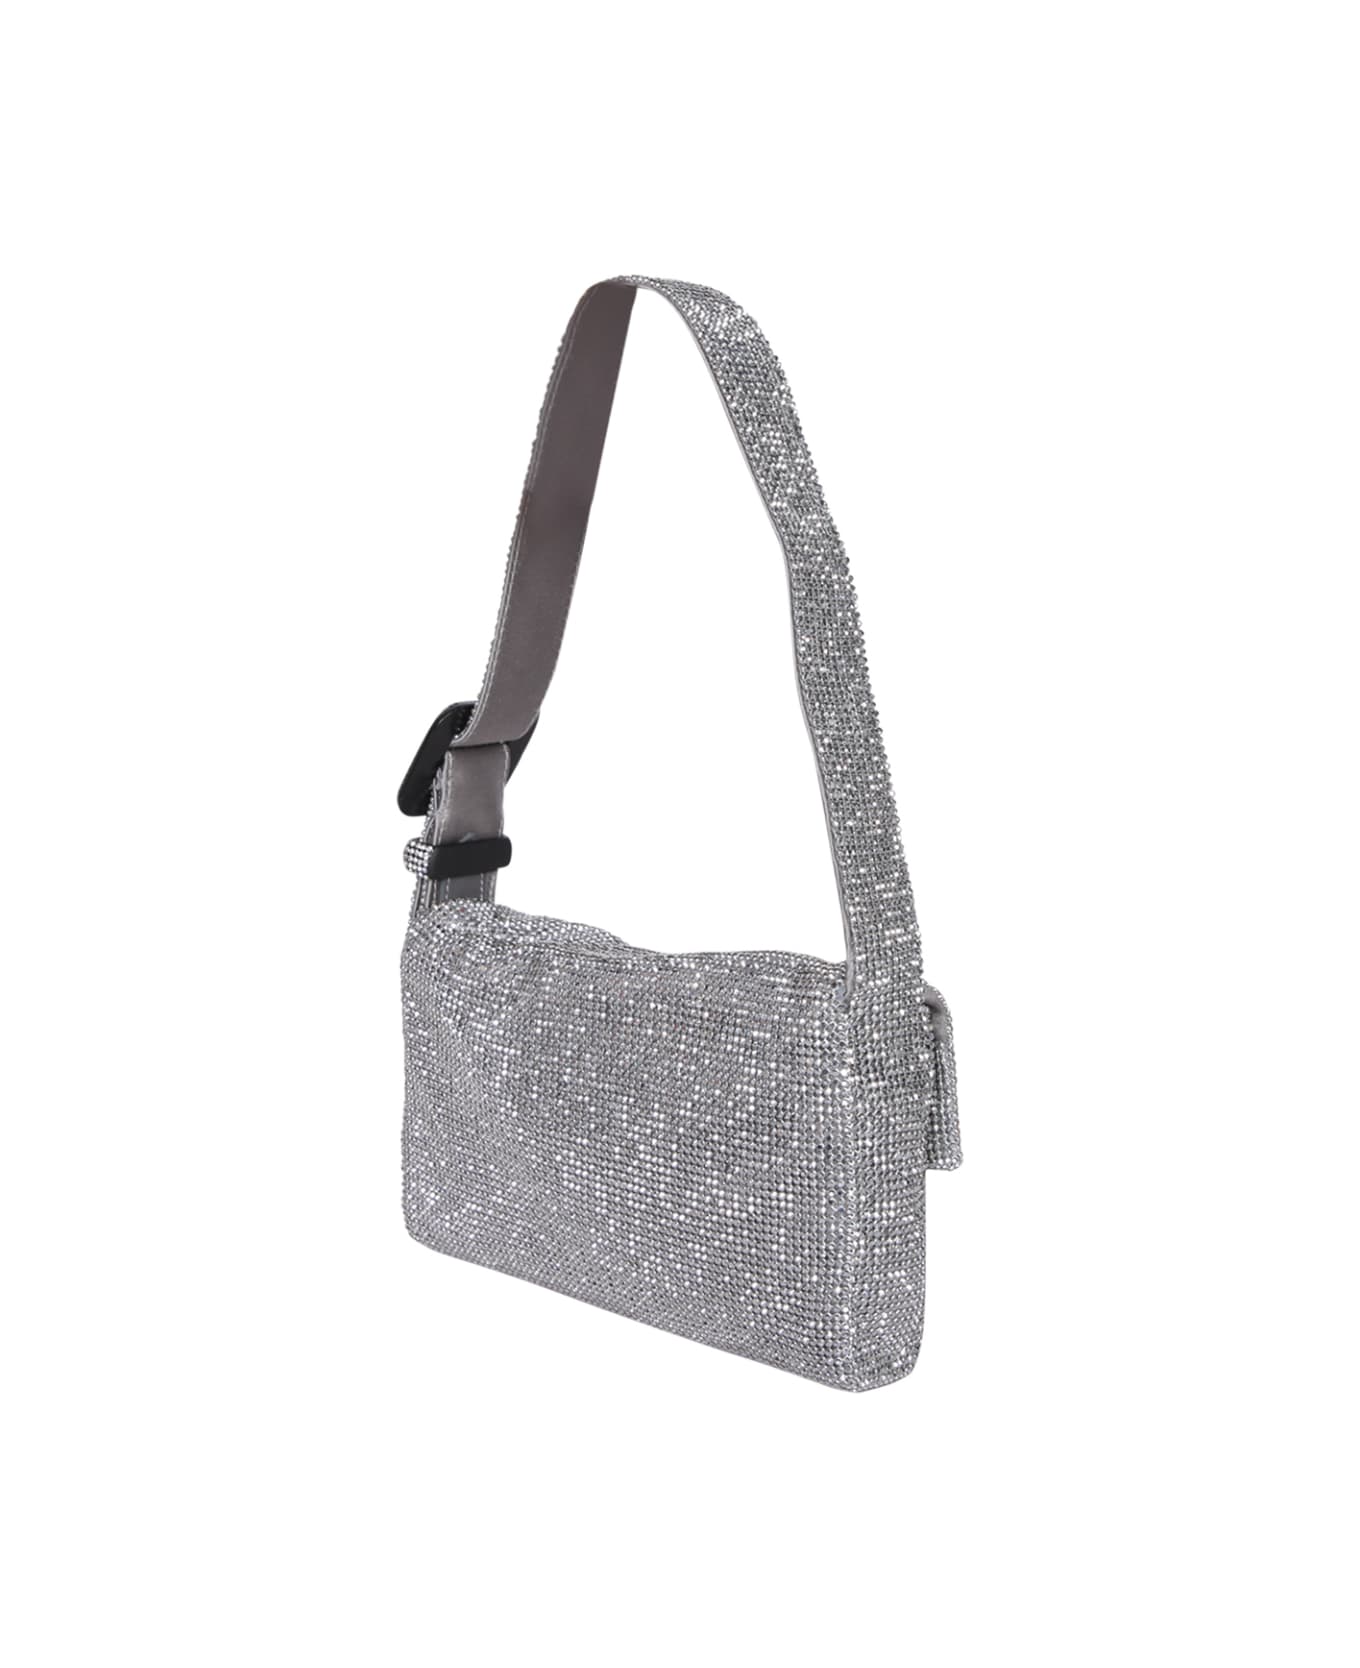 Benedetta Bruzziches Vitty La Mignon Silver Bag - Metallic ショルダーバッグ